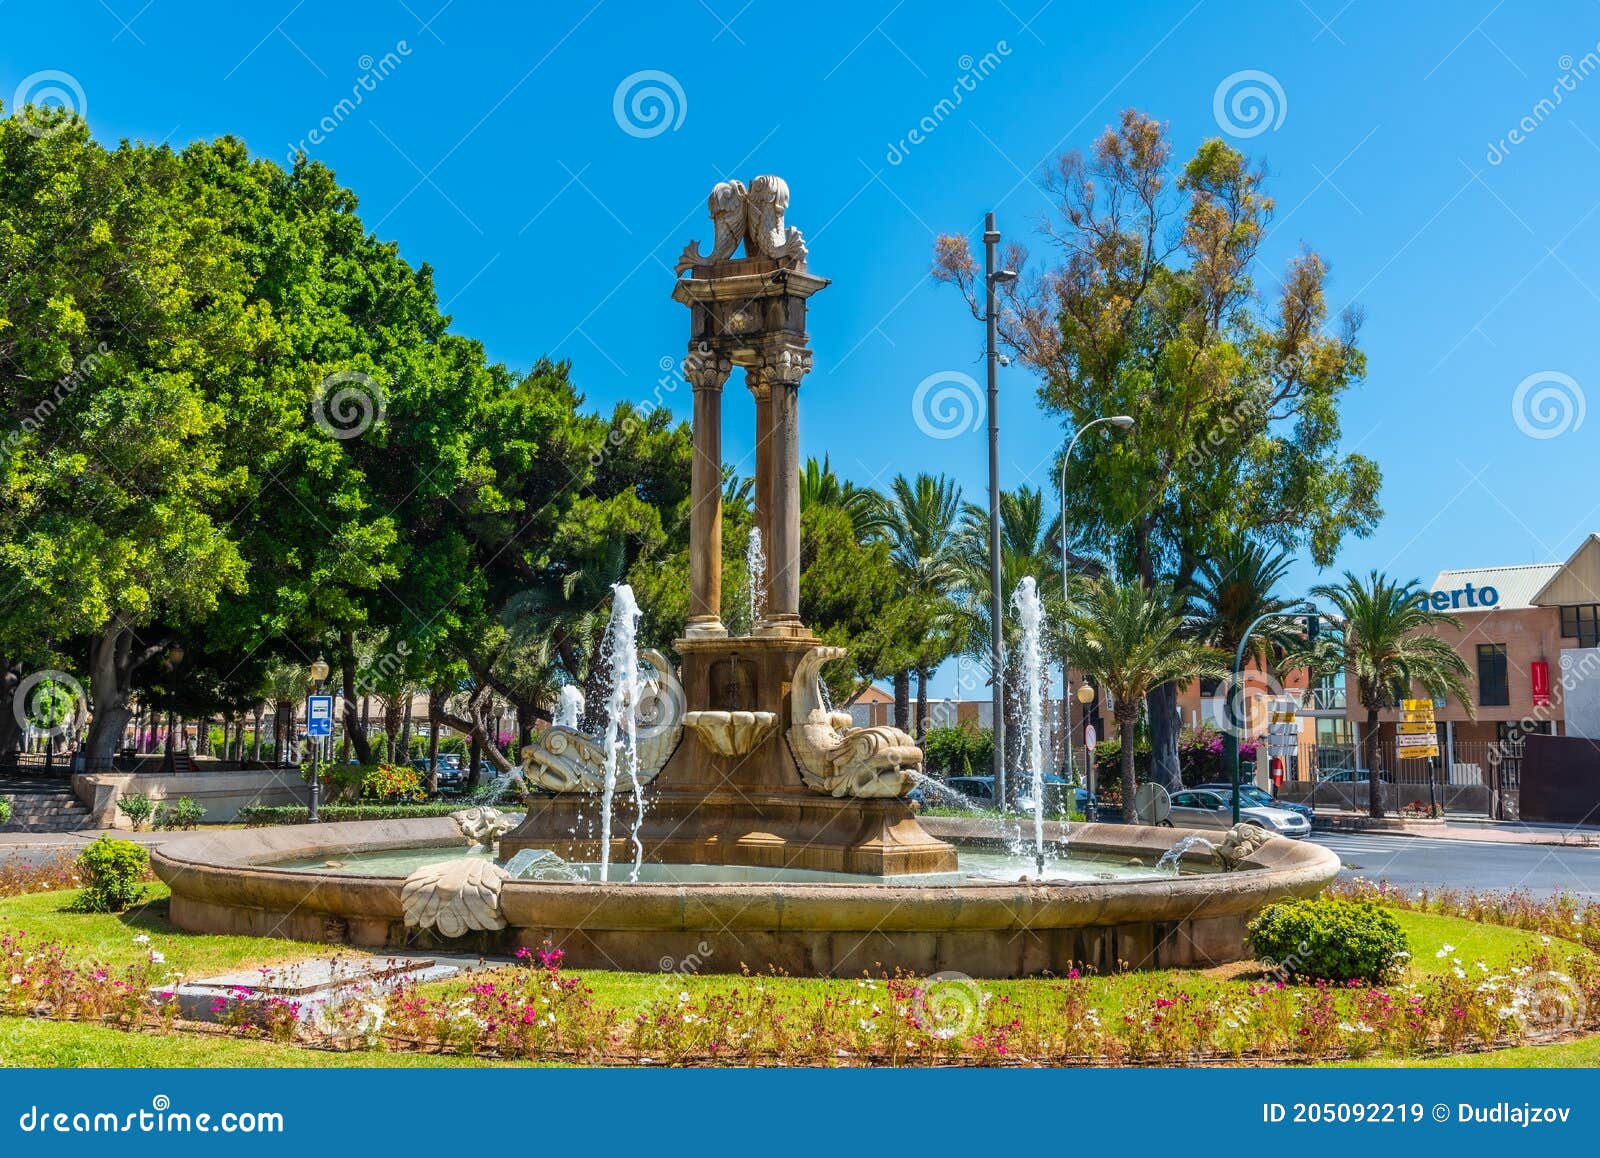 fuente de los peces fountain in spanish town almeria